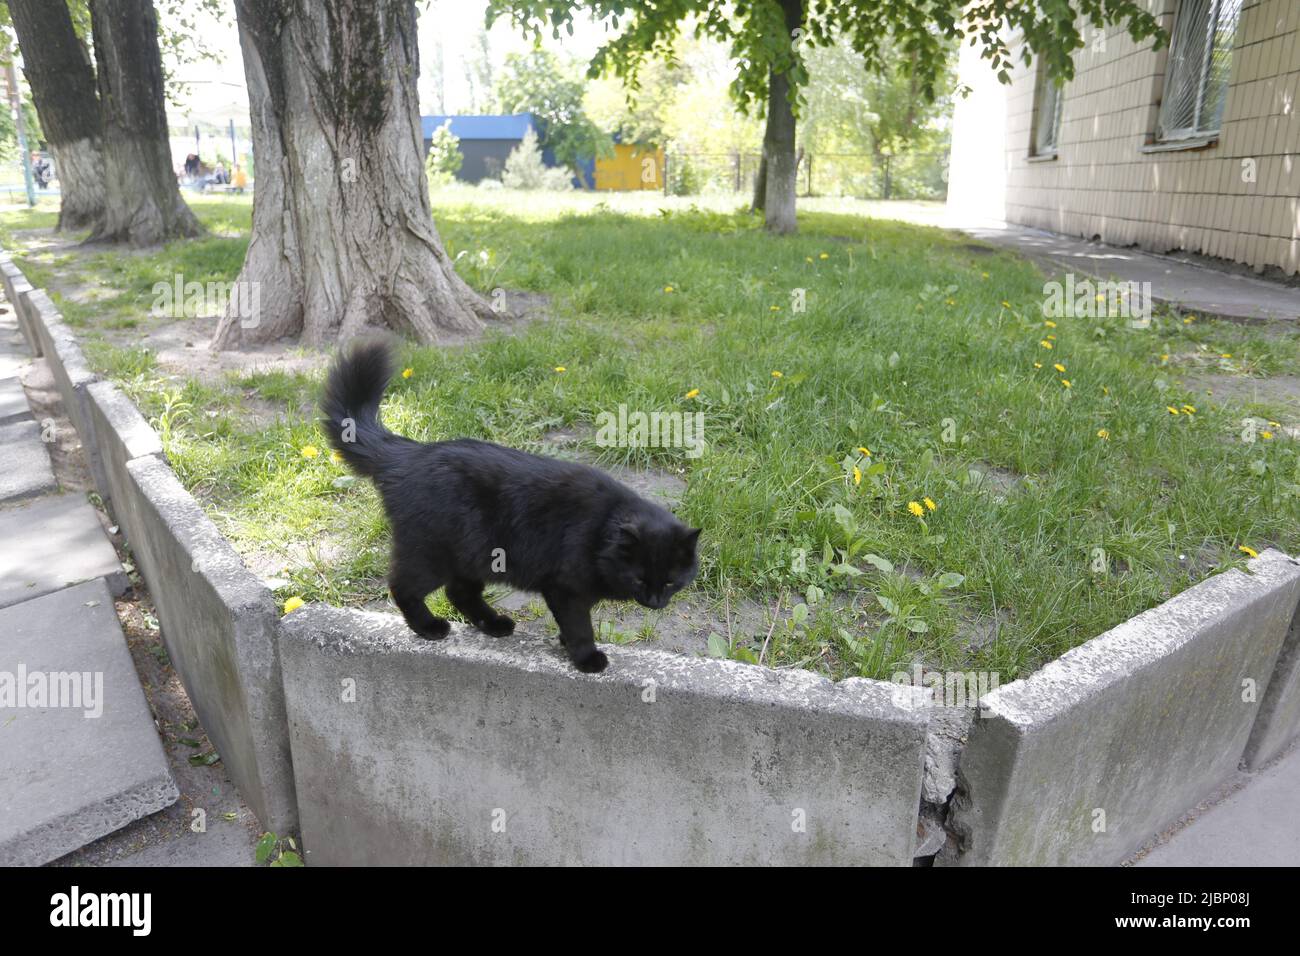 Schwarze Katze führt einen Balanceakt durch, indem sie sich am Rand von Betonblöcken, die zur Unterstützung der Bäume gelegt wurden, ihren Weg bahnt. Pelzigen Kerl ging mit Anmut Stockfoto